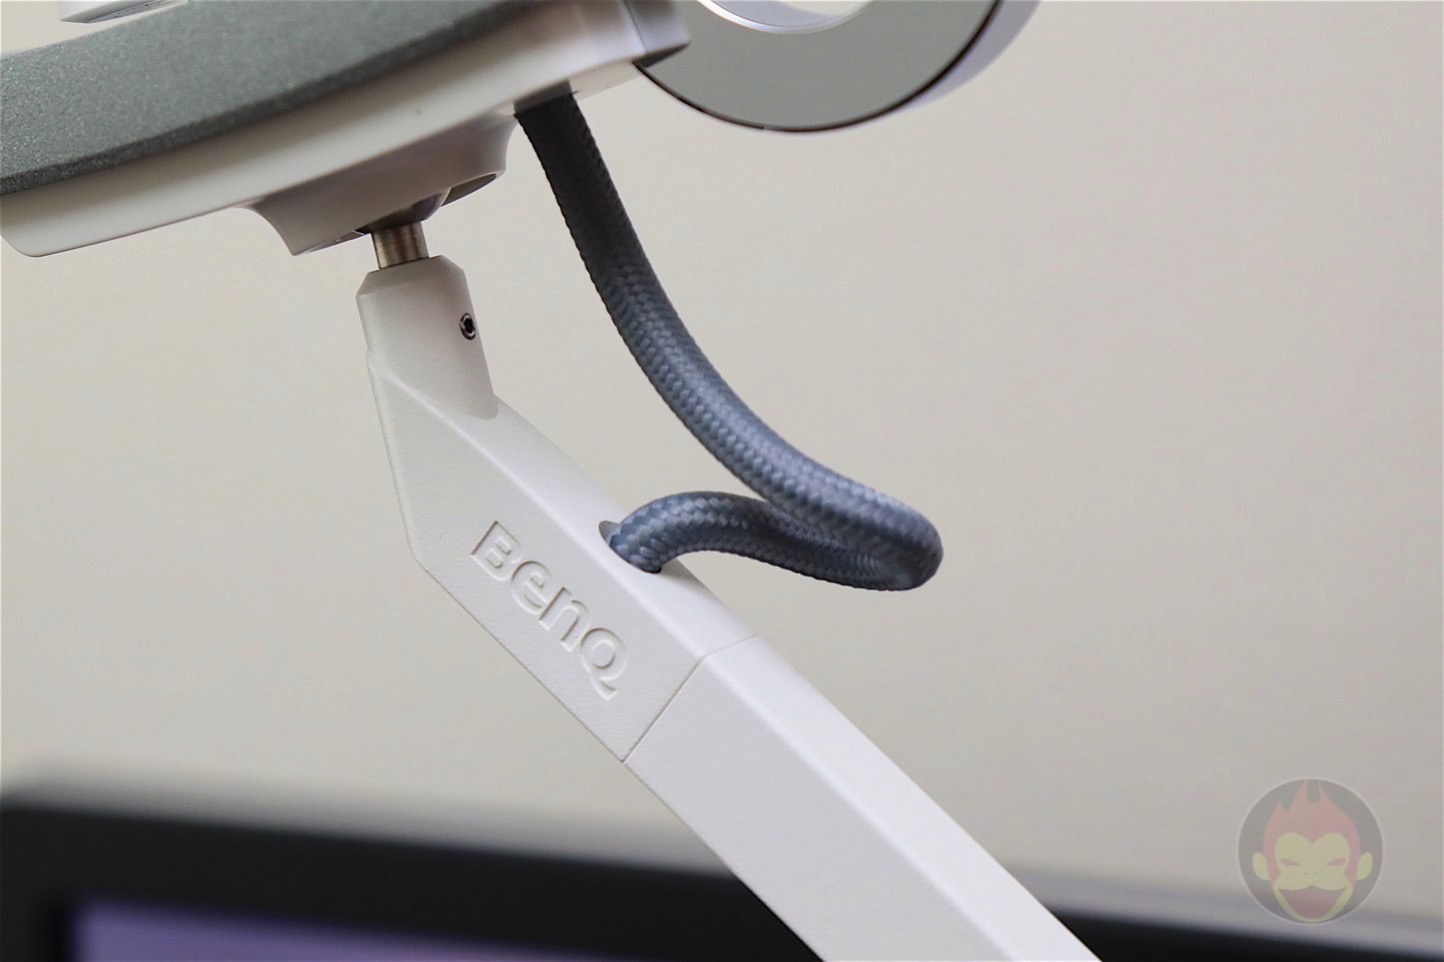 Benq-WiT-Eye-Care-desk-lamp-10.jpg